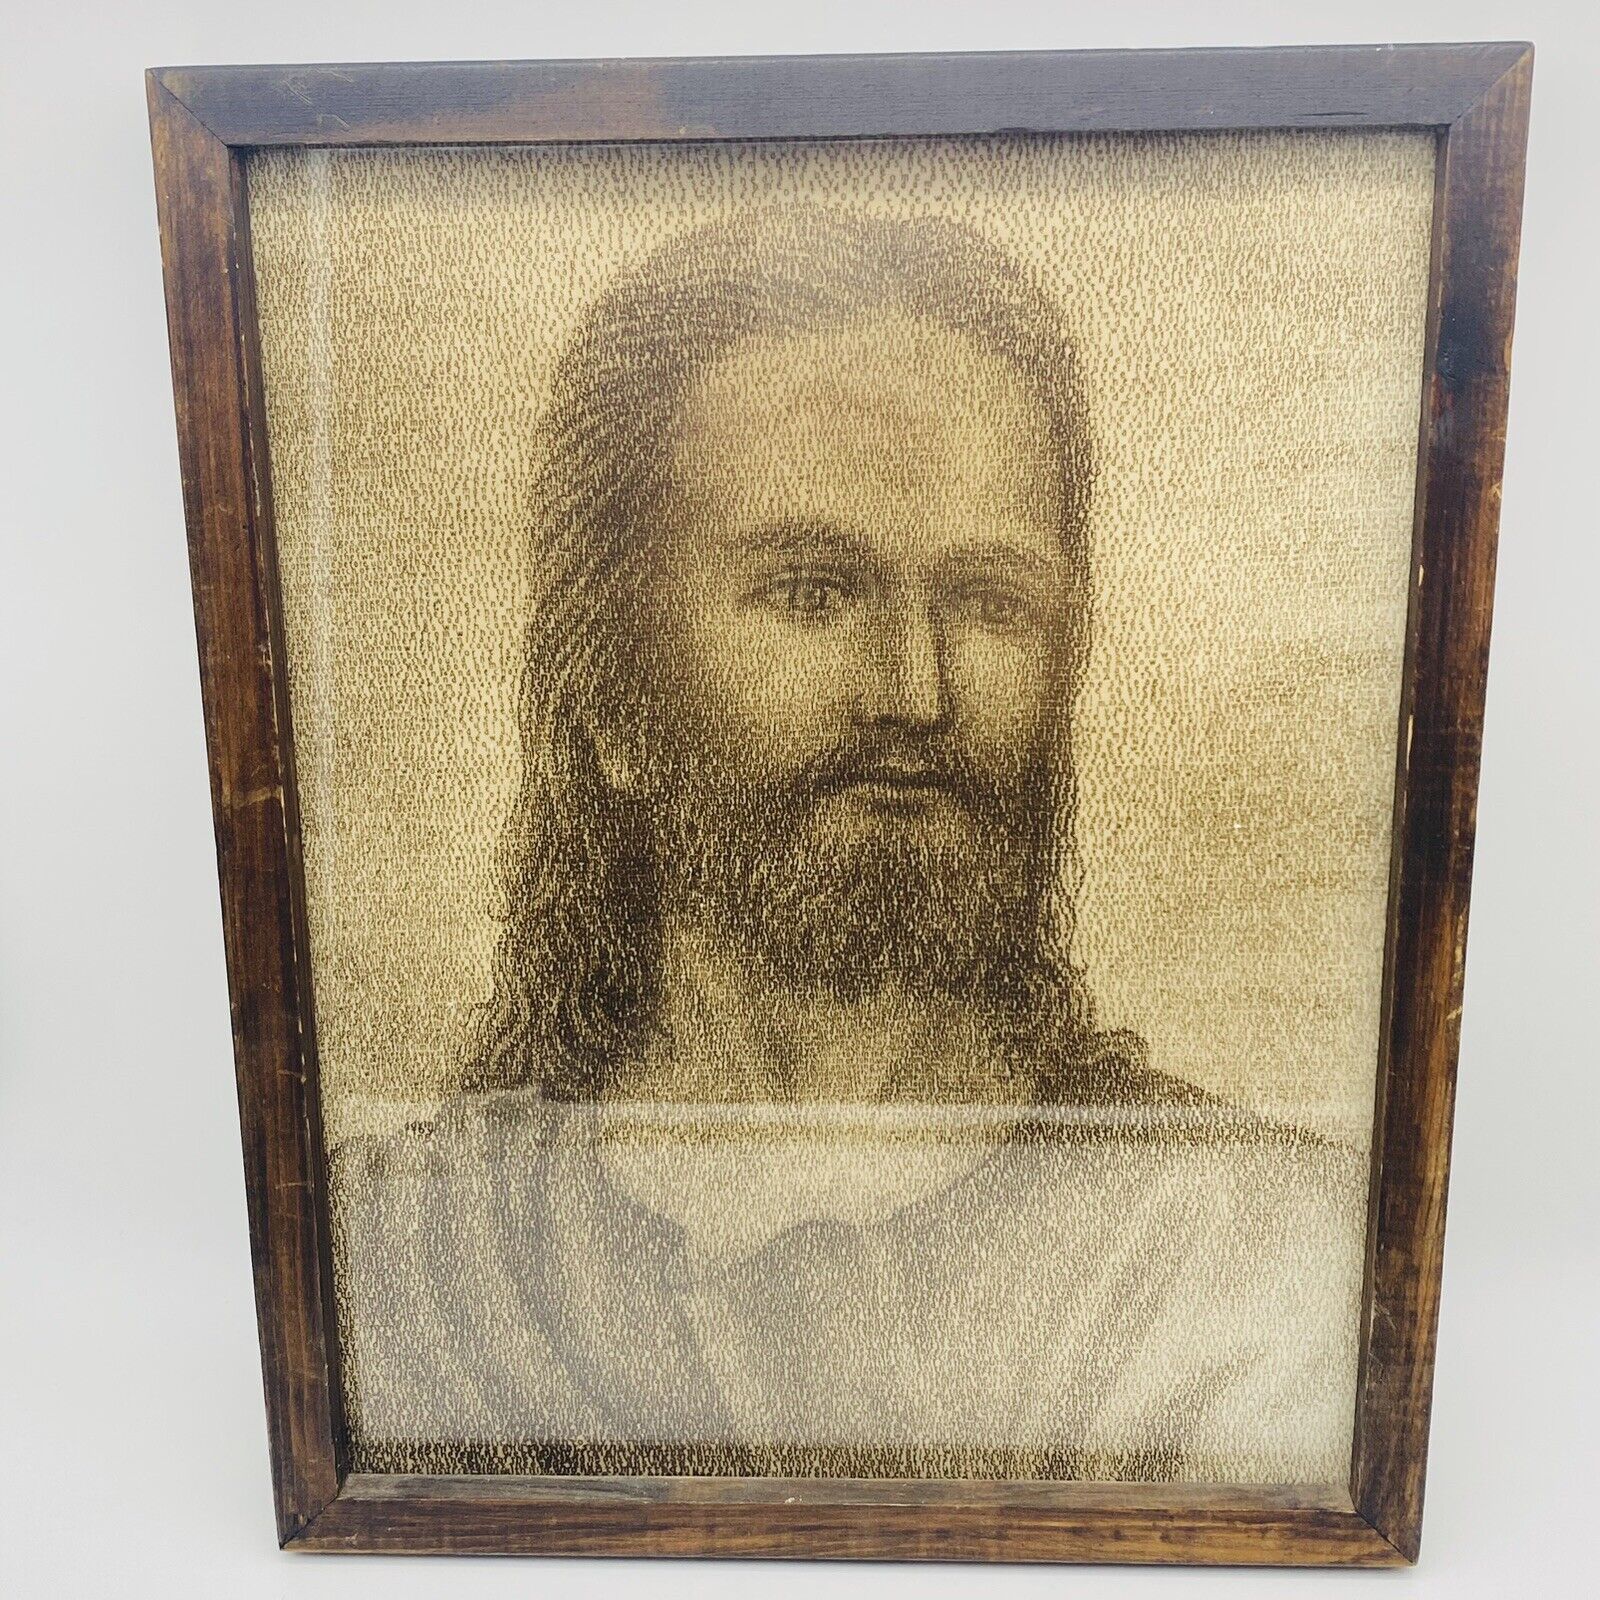 Vintage Jesus Christ Portrait Bible Scripture Calligram Word Art Framed Picture